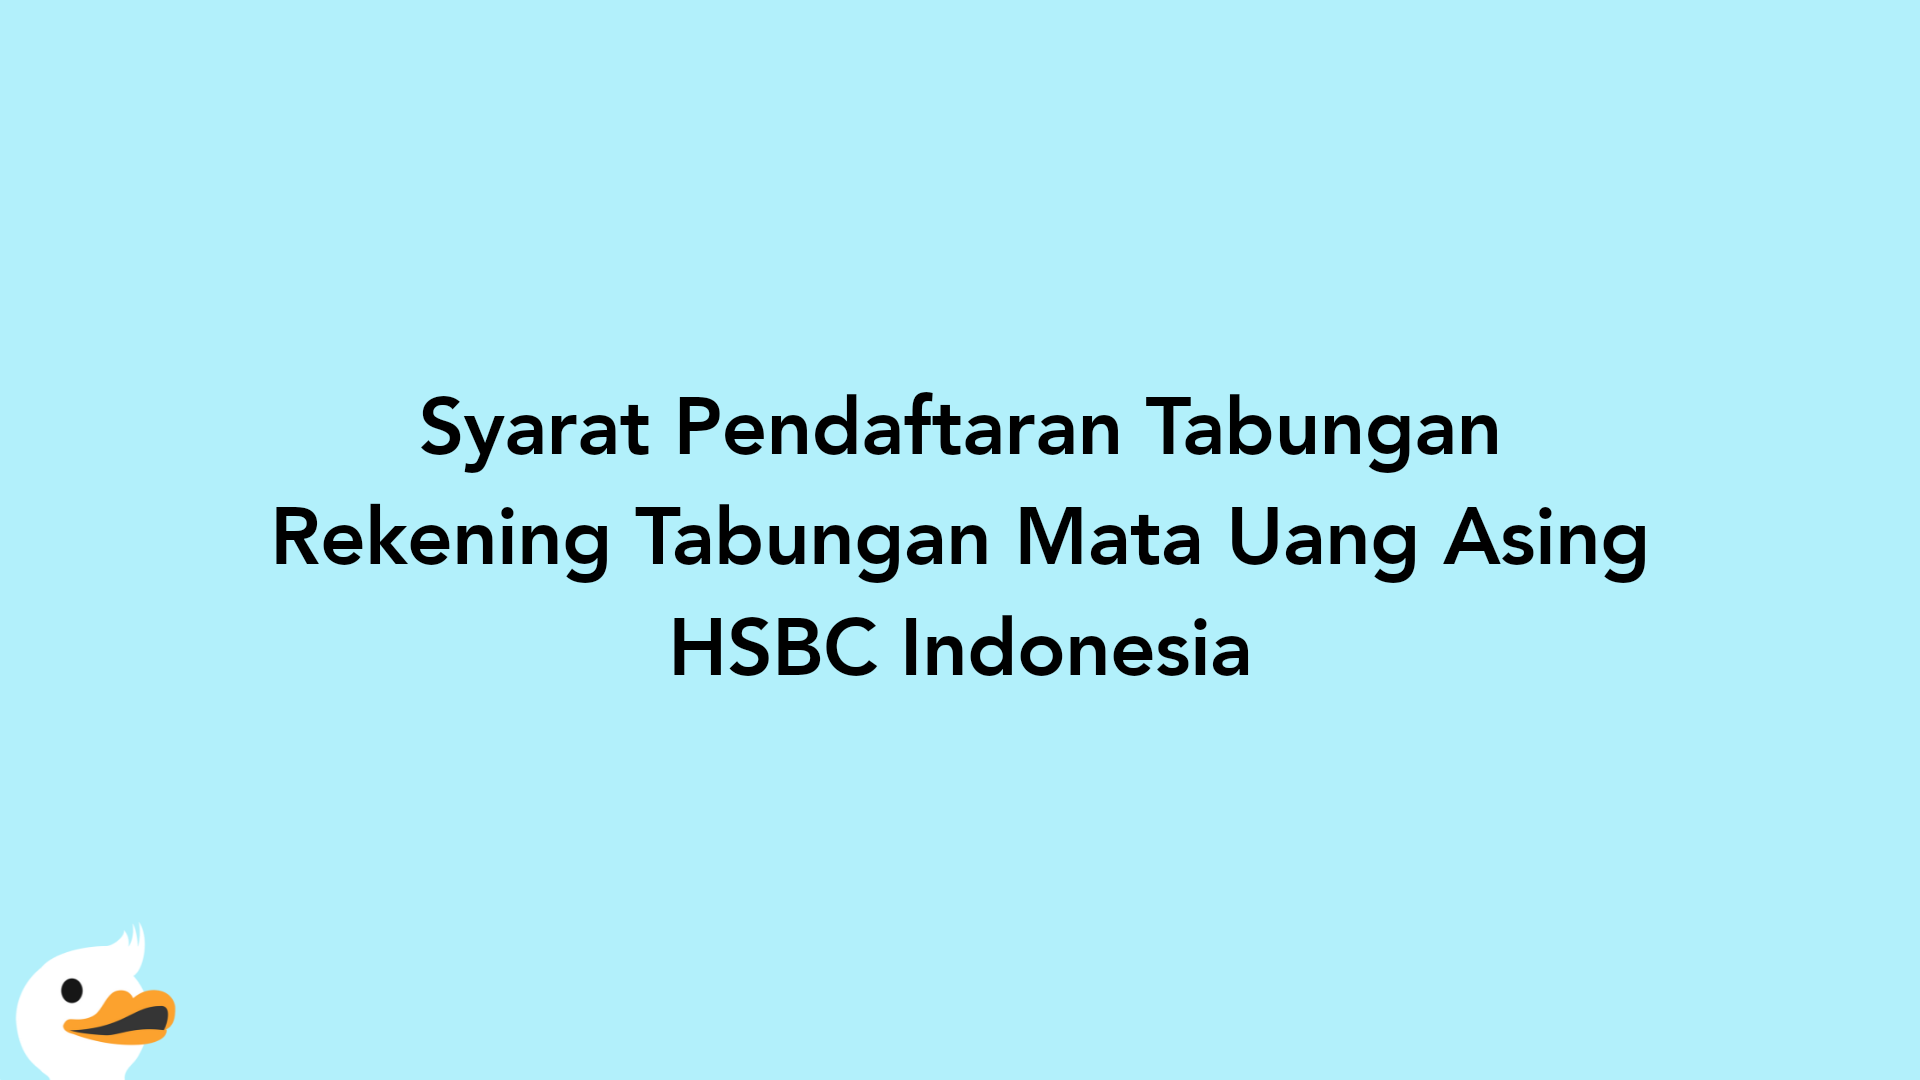 Syarat Pendaftaran Tabungan Rekening Tabungan Mata Uang Asing HSBC Indonesia